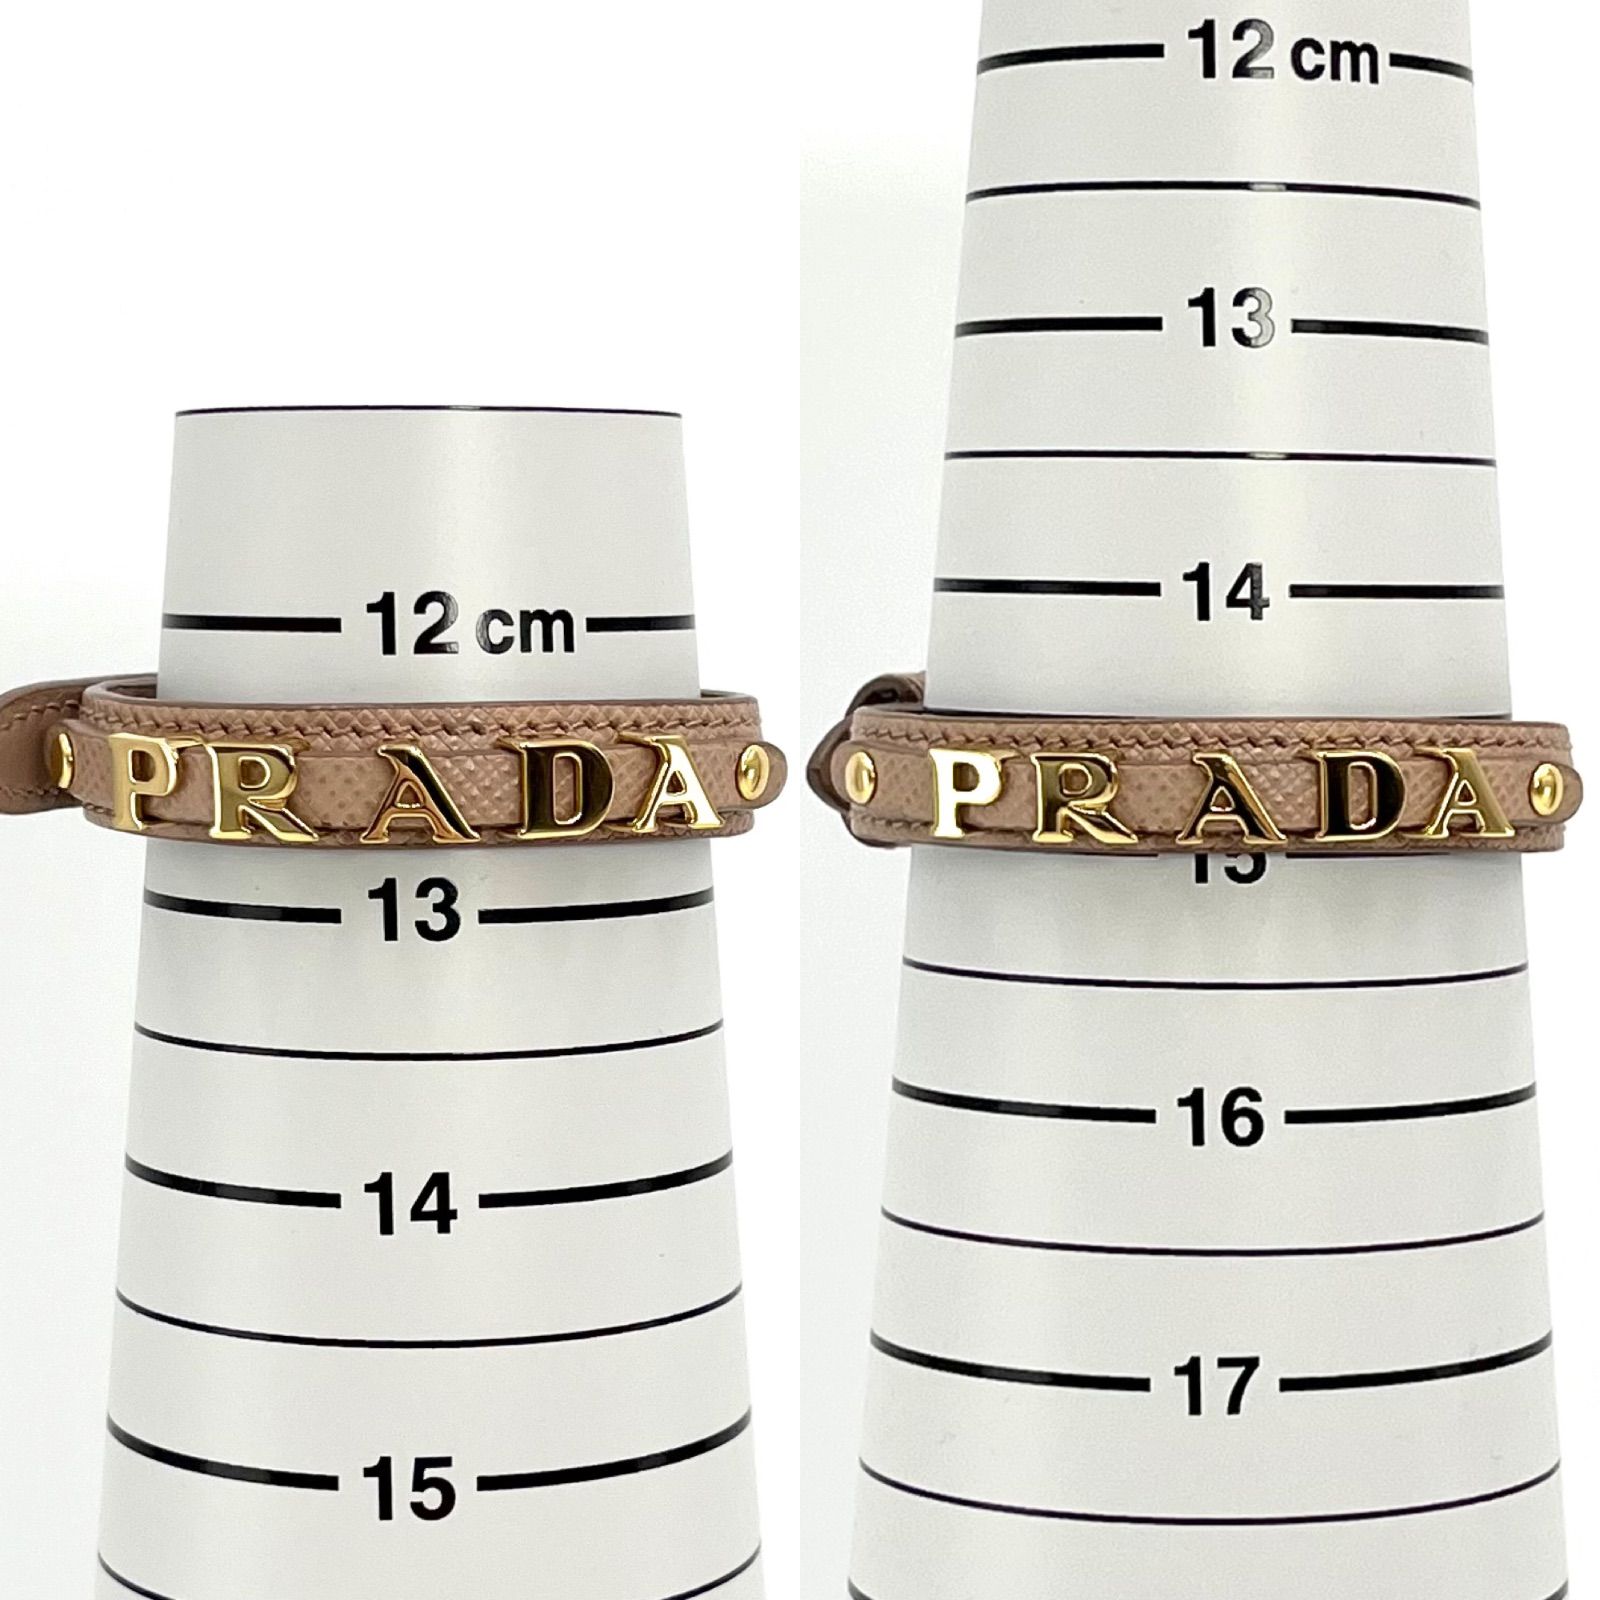 PRADA プラダ サフィアーノ レザー ブレスレット ロゴ アイコン S 手首周り約12.5~15㎝ ピンクベージュ ゴールドカラーのメタル -  メルカリ